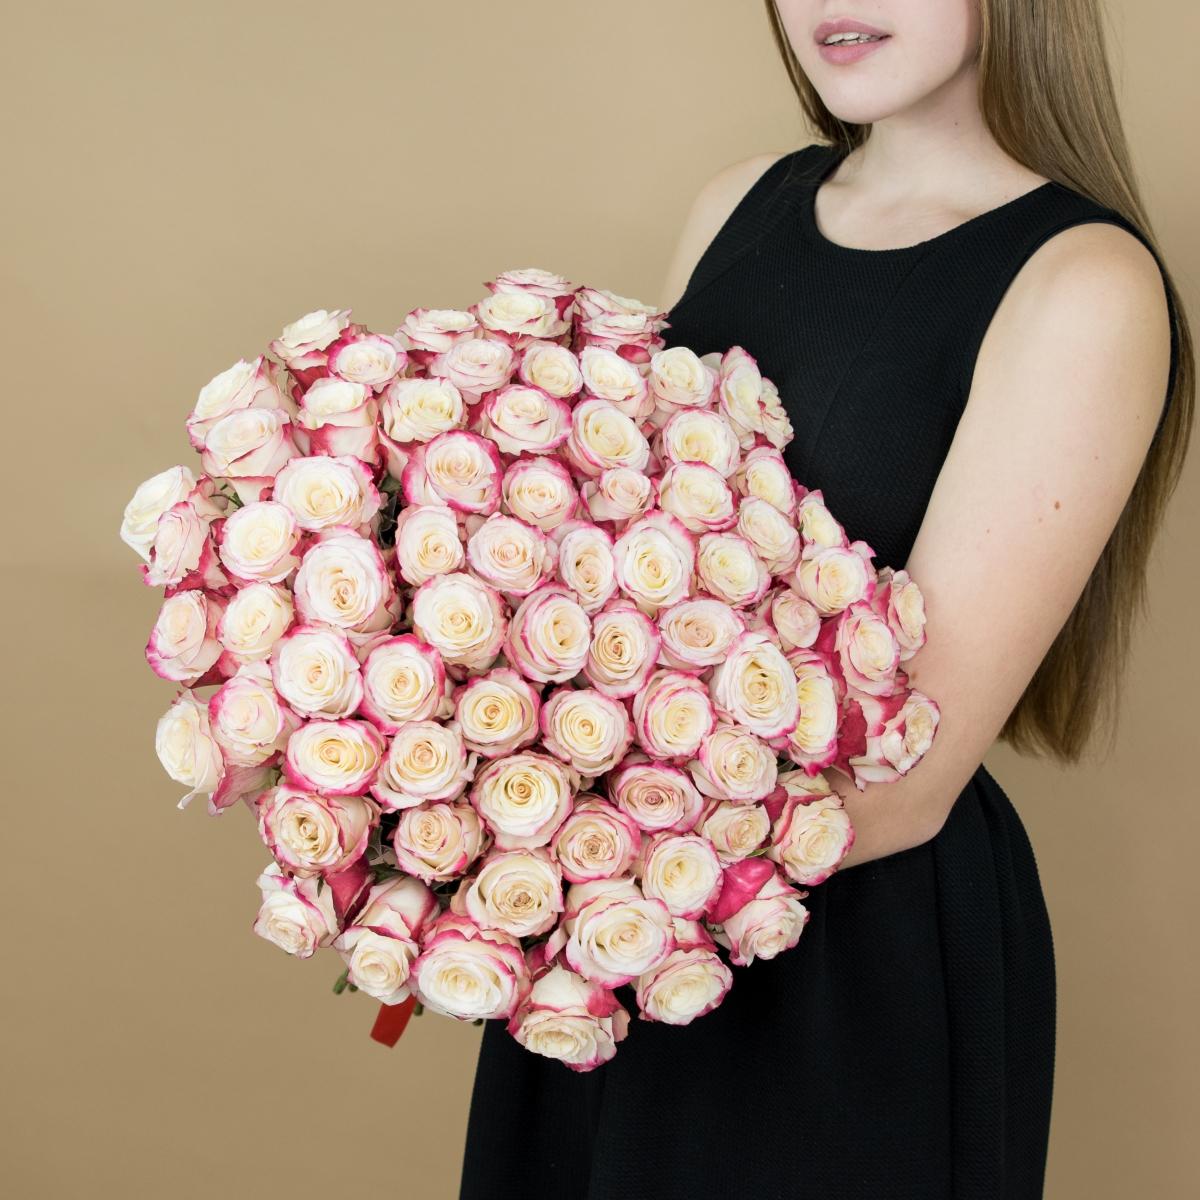 Розы красно-белые 101 шт. (40 см) [код товара: 91848]